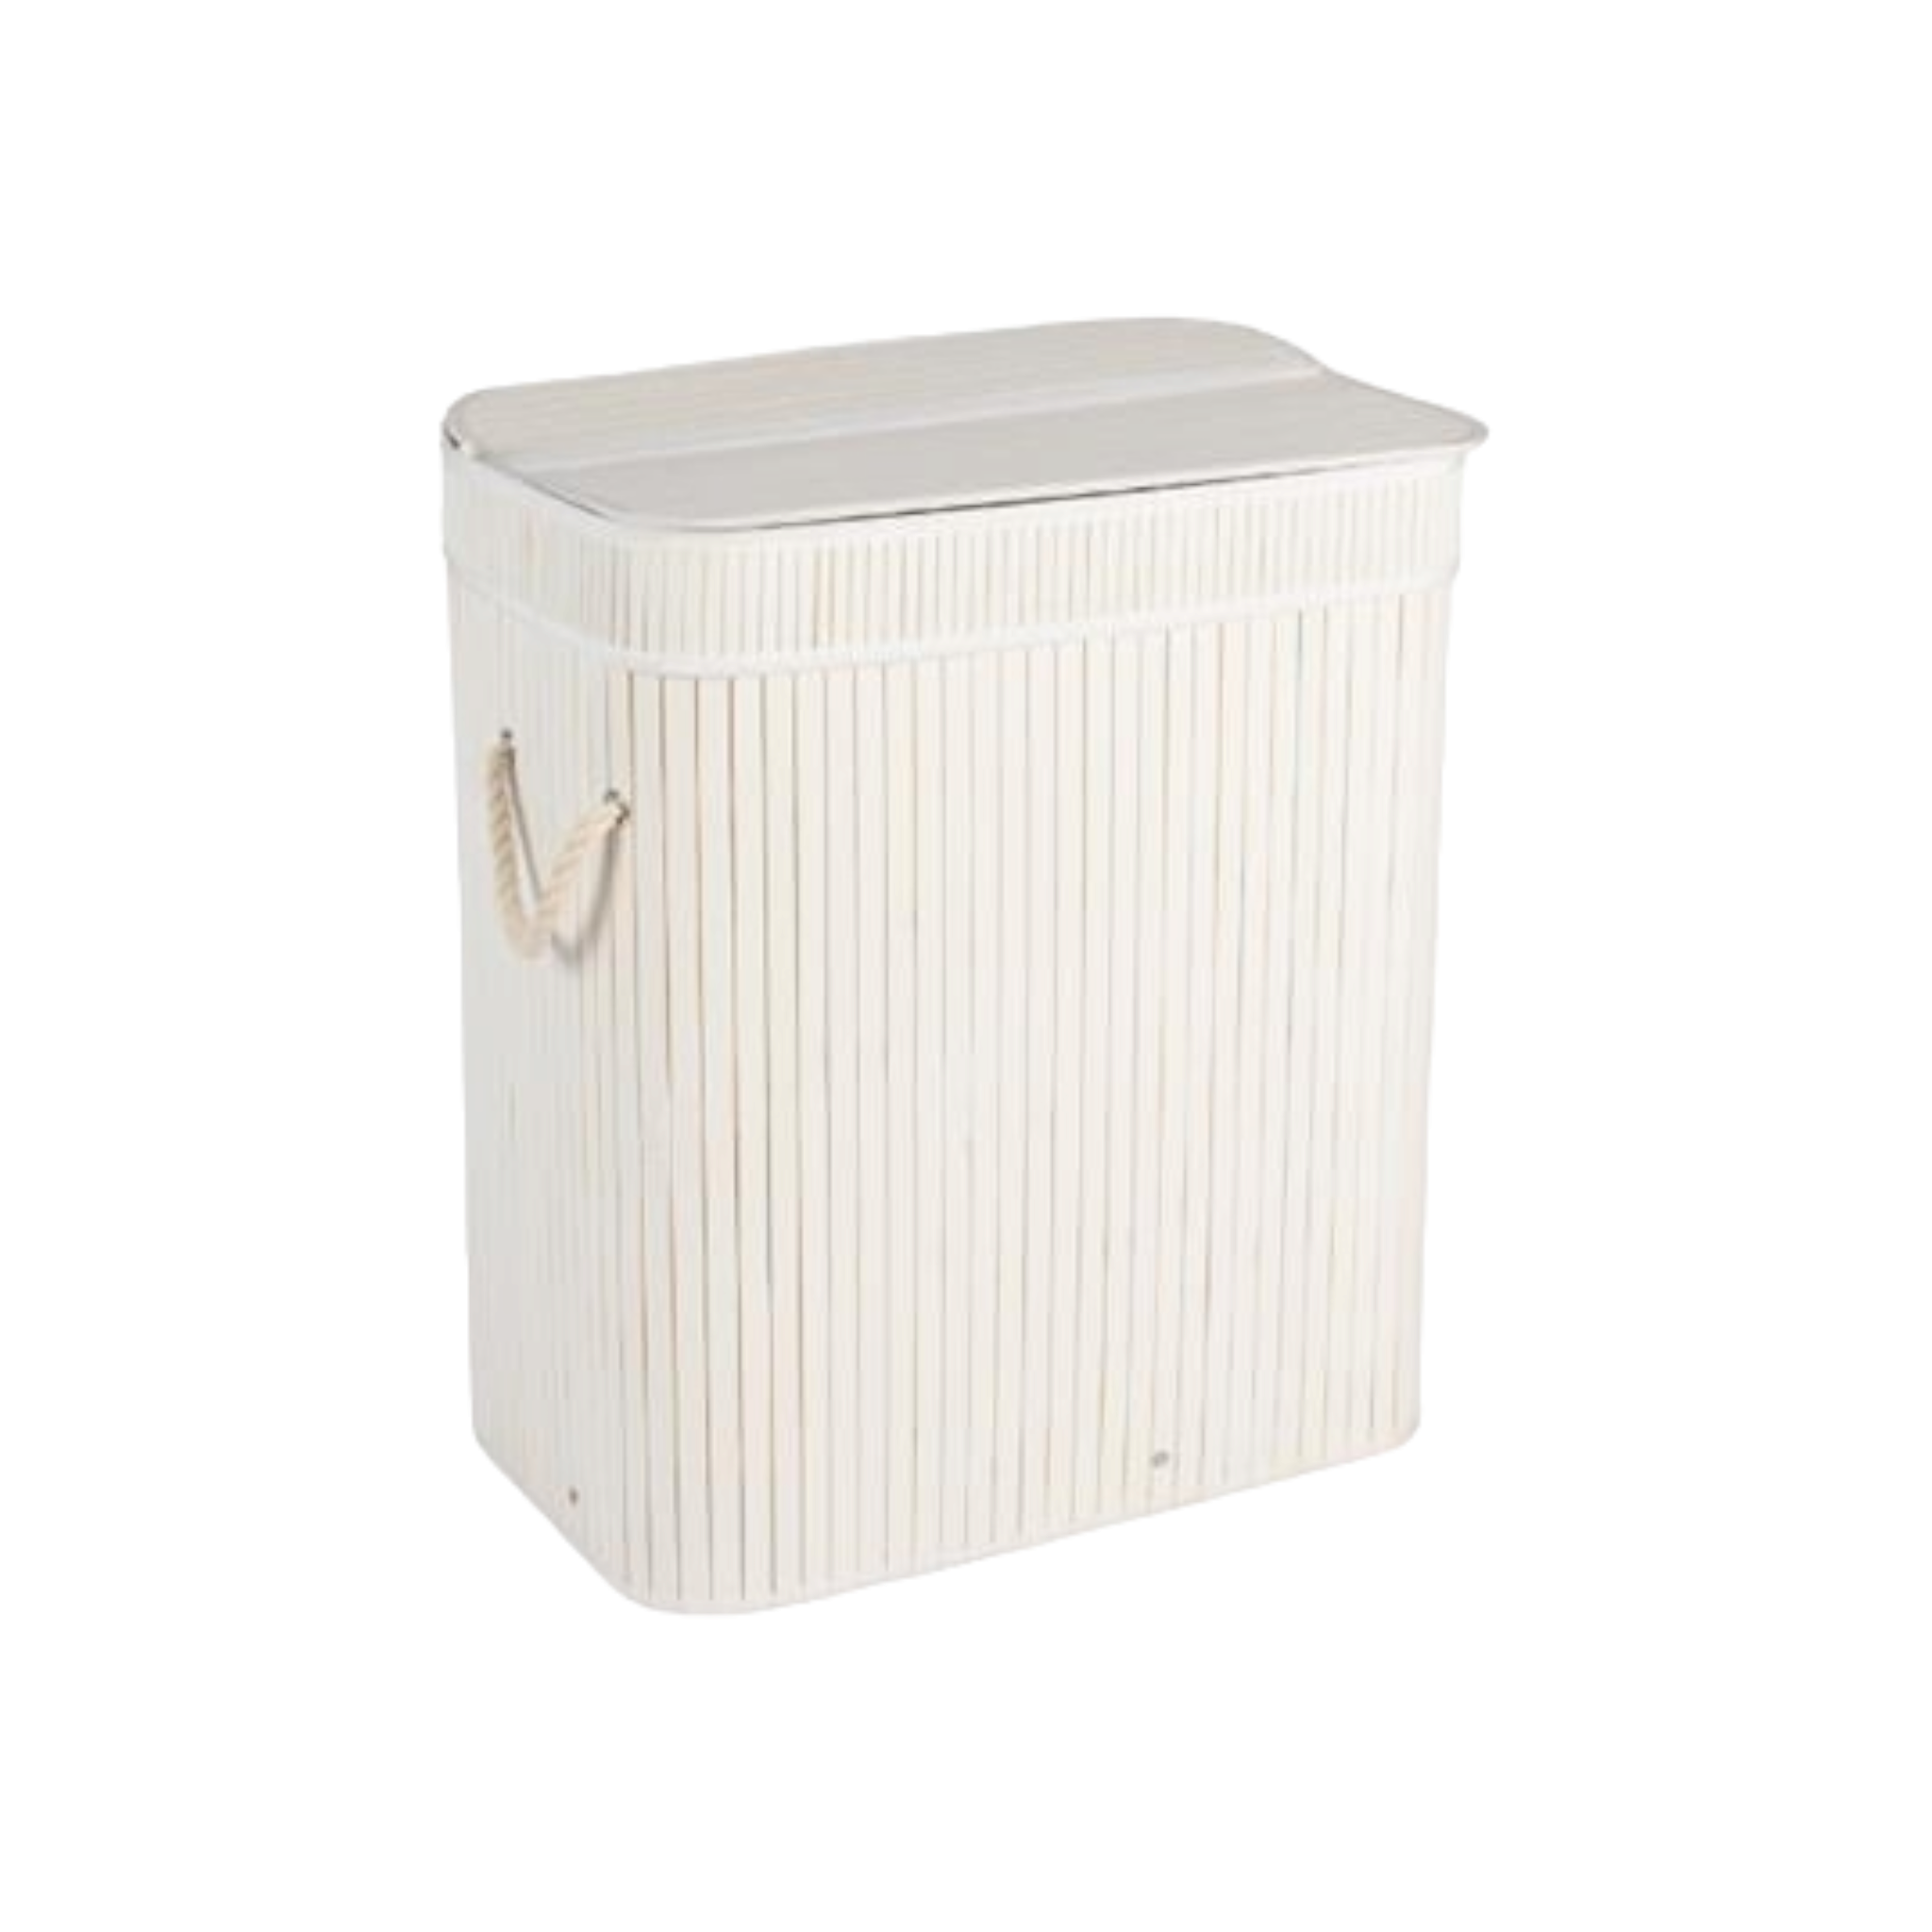 Aqua Bamboo Foldable Laundry Basket Double Rectangle White 15690